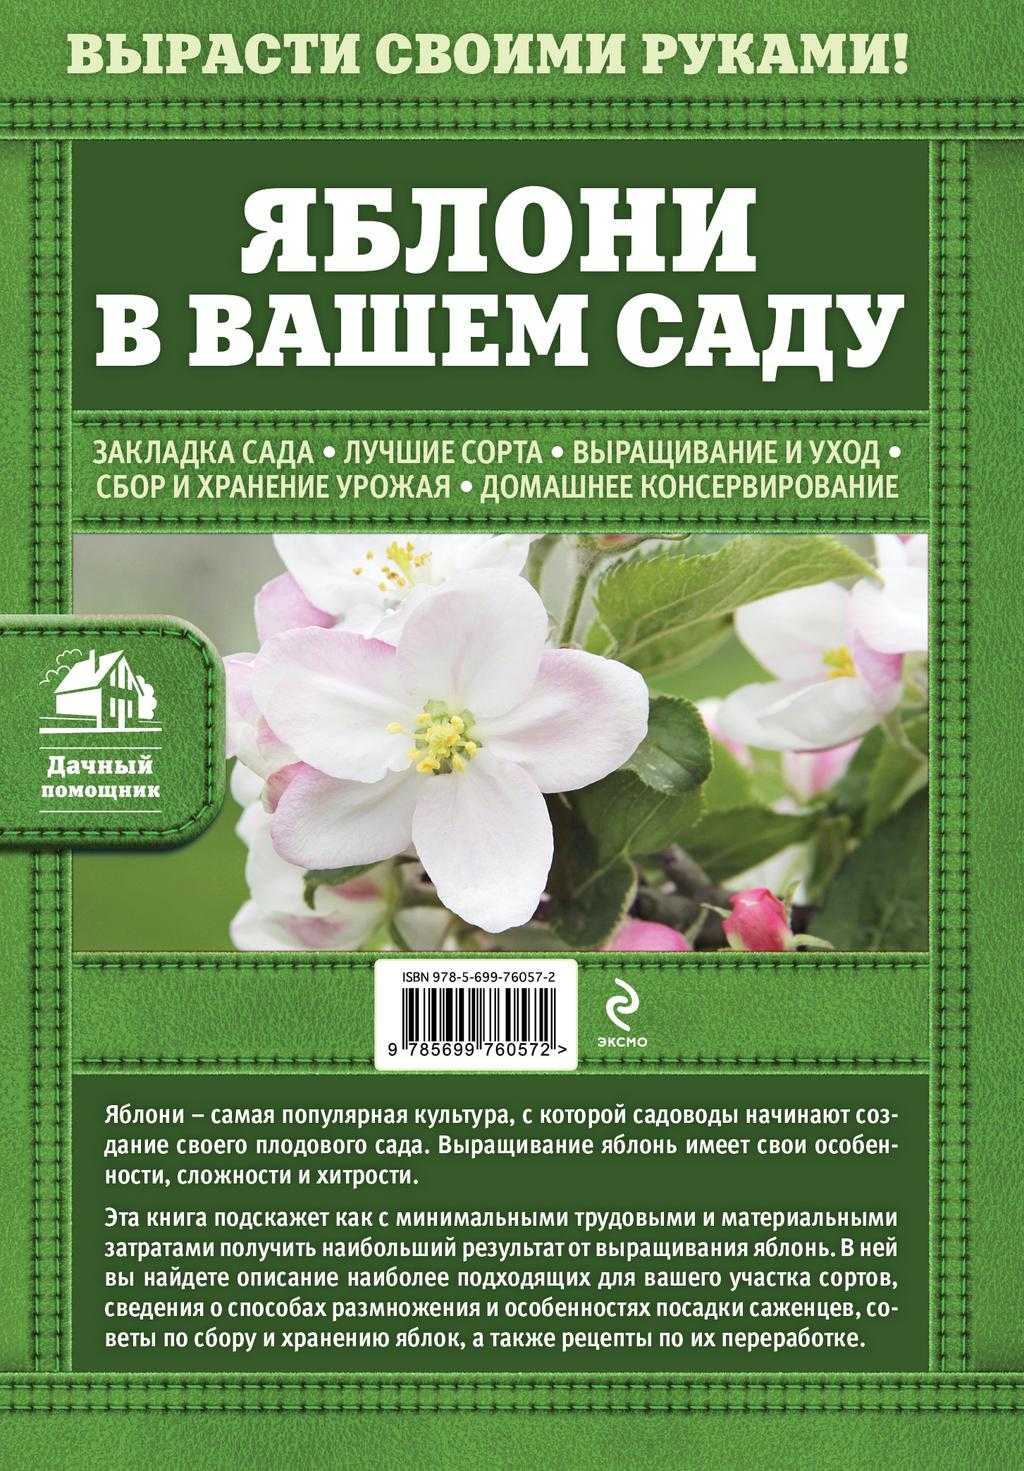 Белорусская яблоня дарунок: описание, фото, отзывы